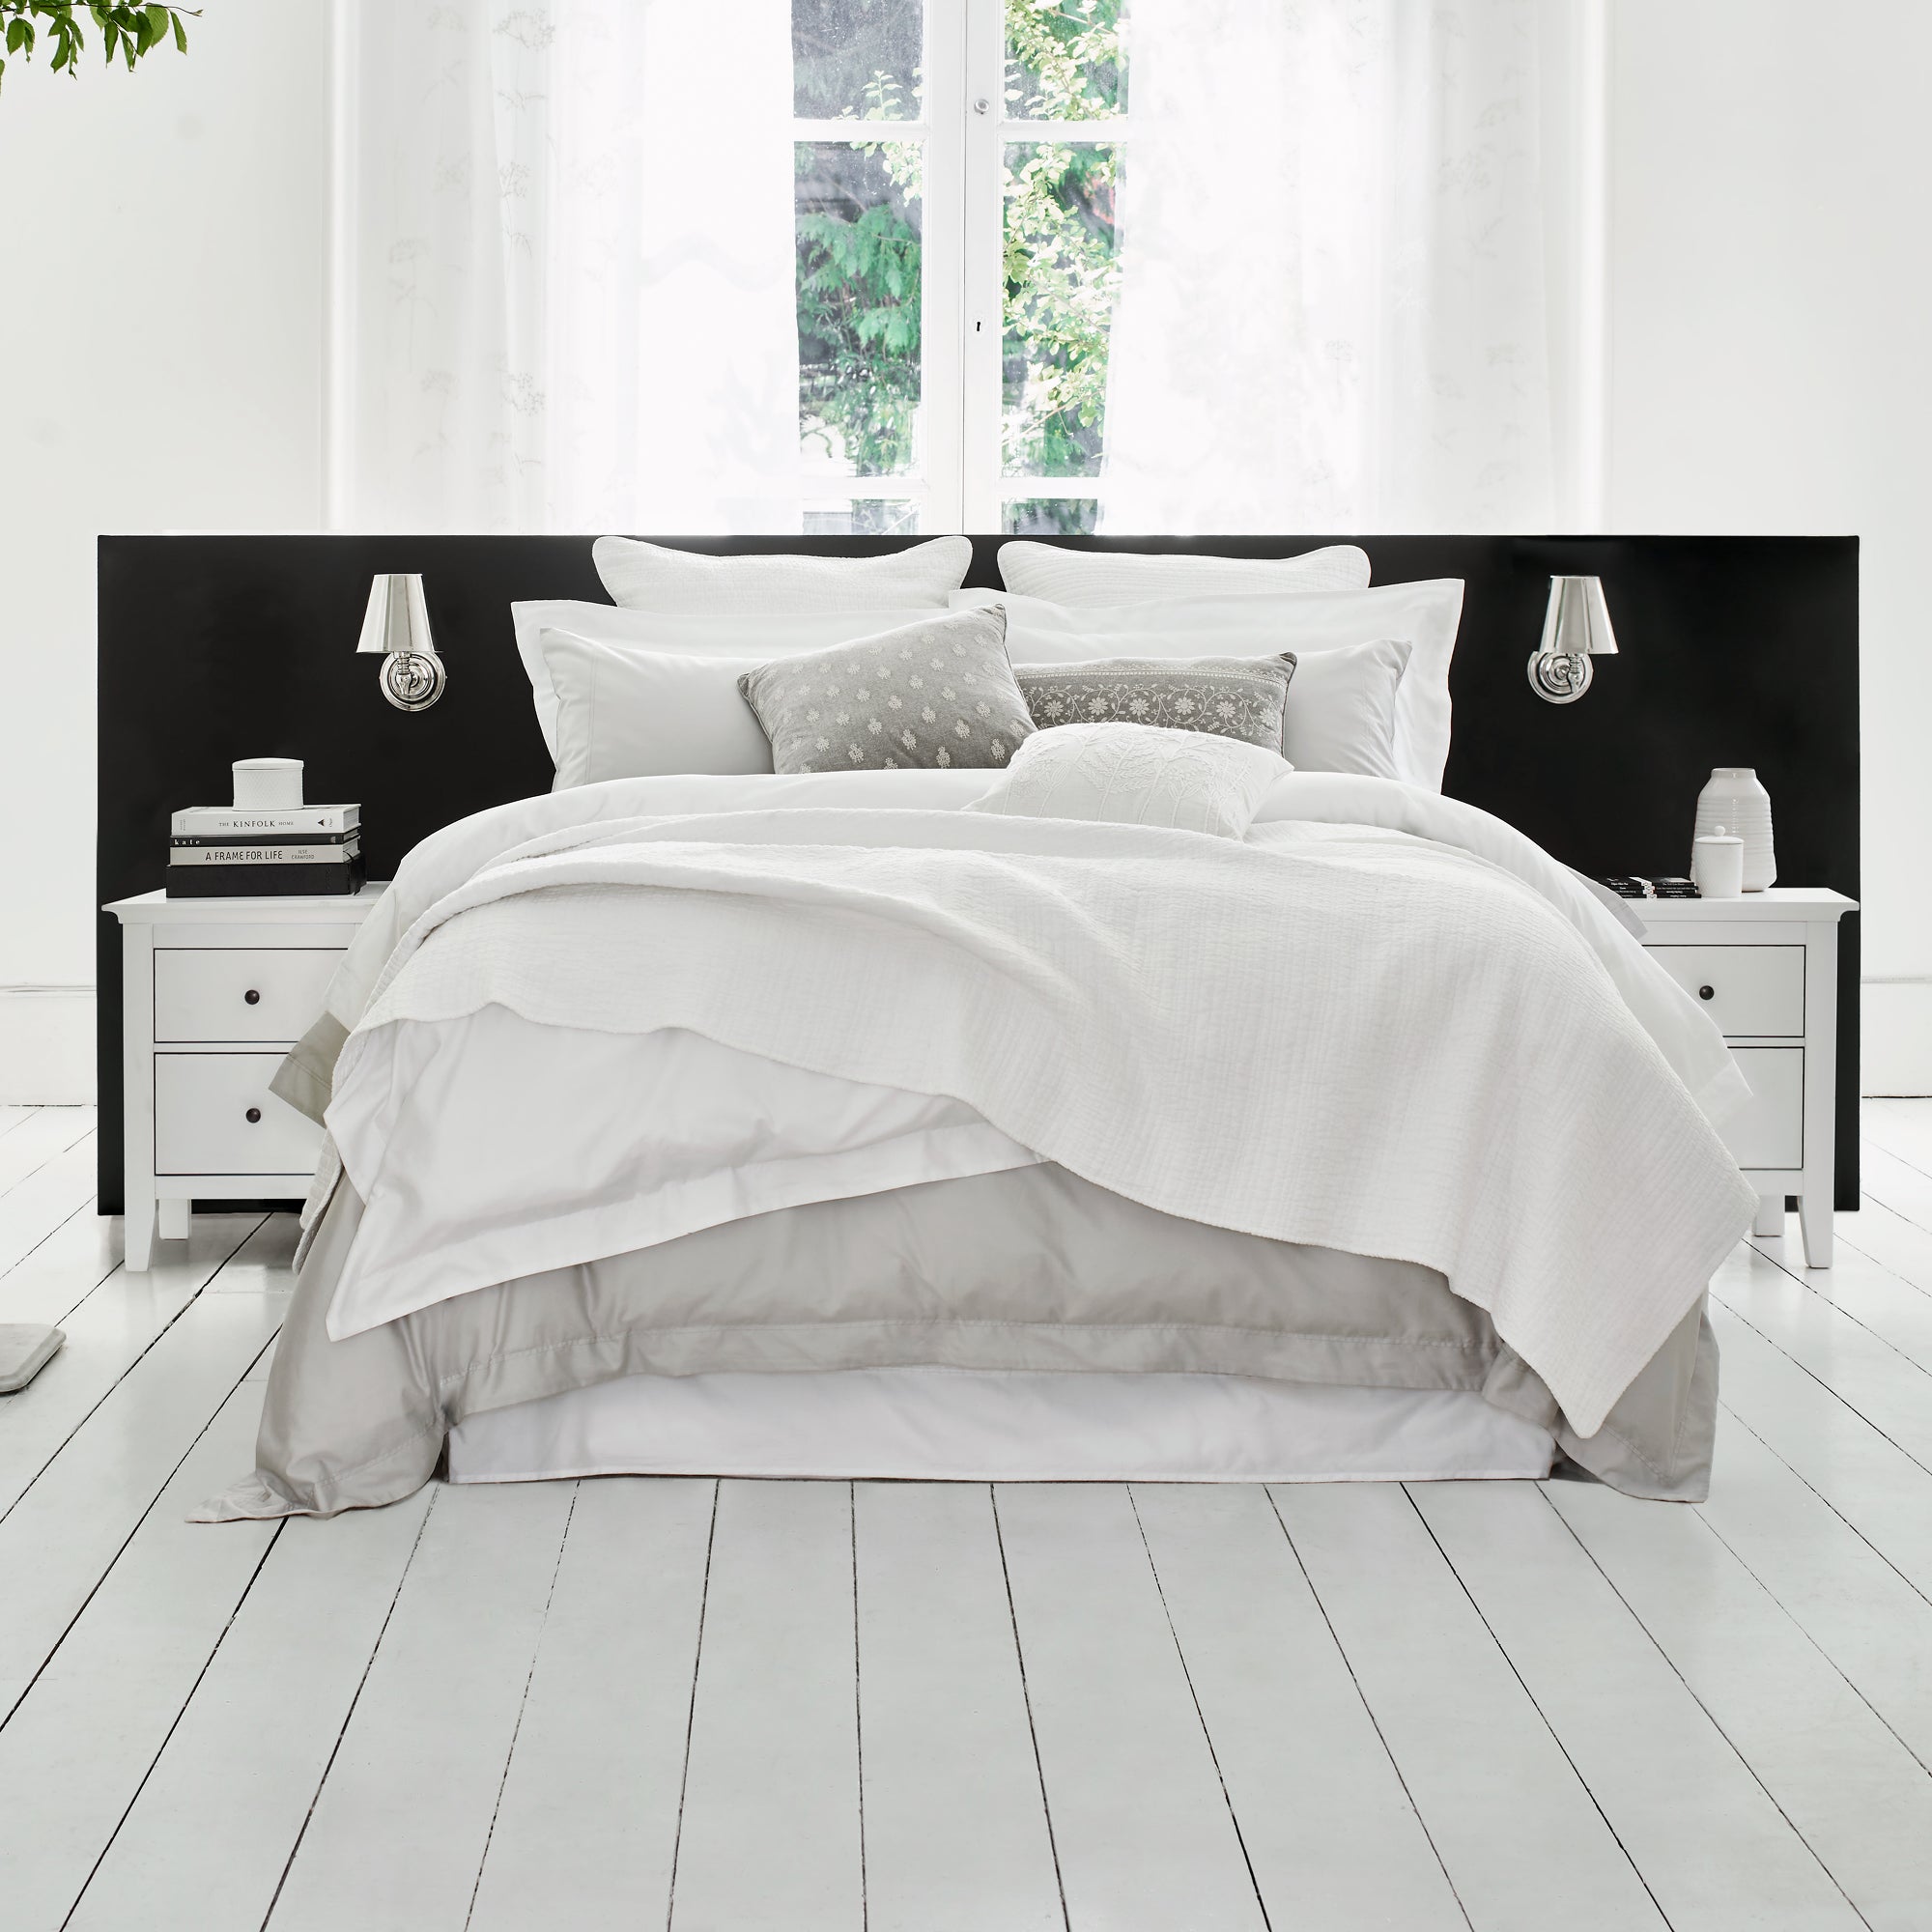 Dorma Purity Chilton Bedspread White